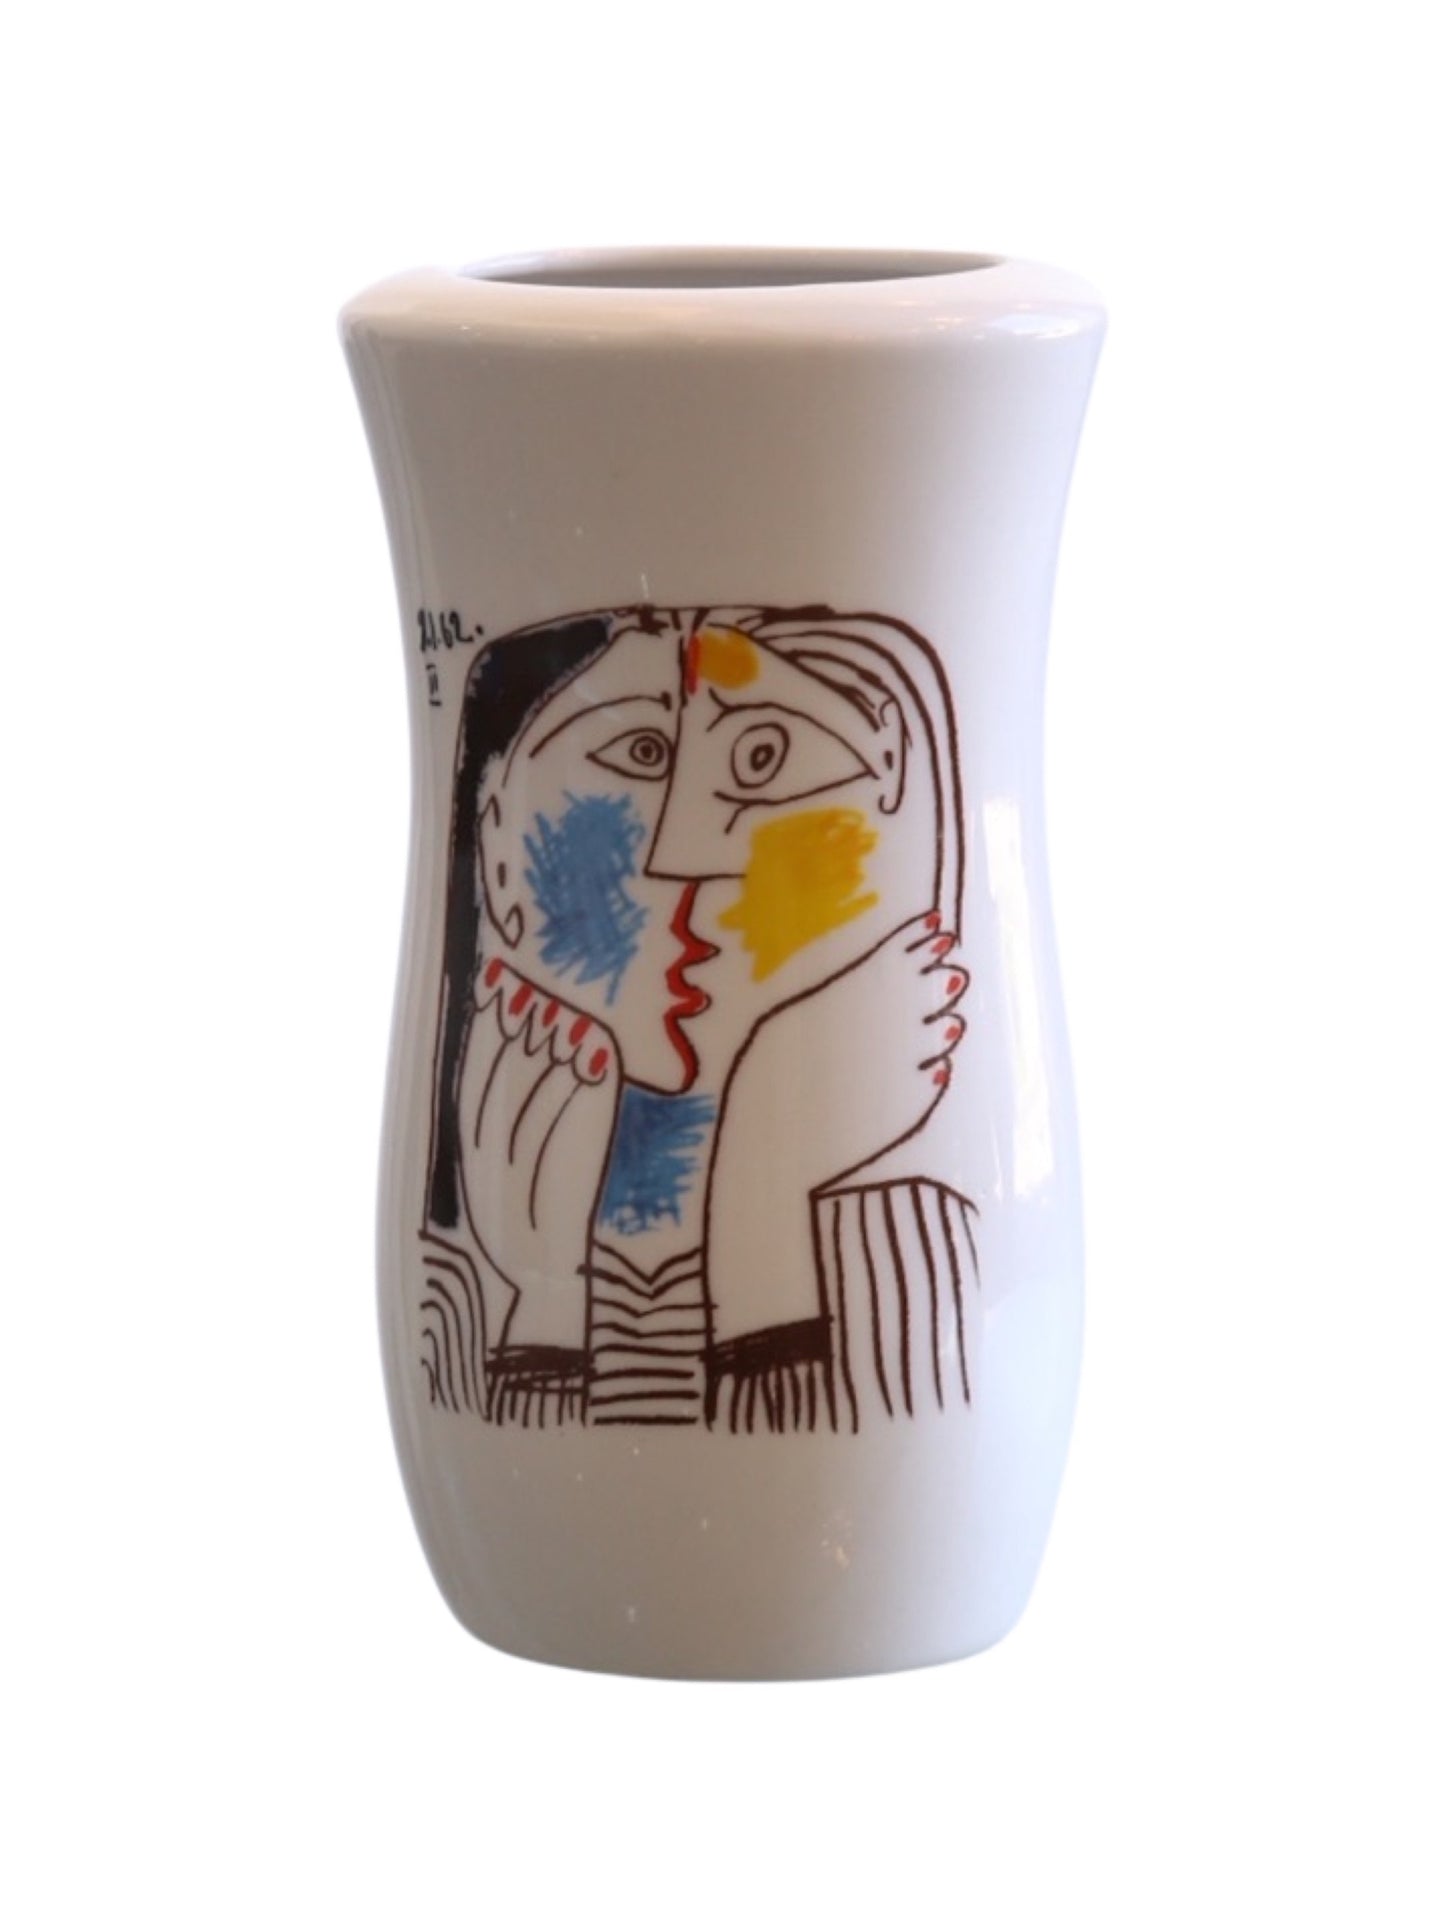 Italian Porcellane Tognanna Ceramic Vase Representing a Picasso Painting